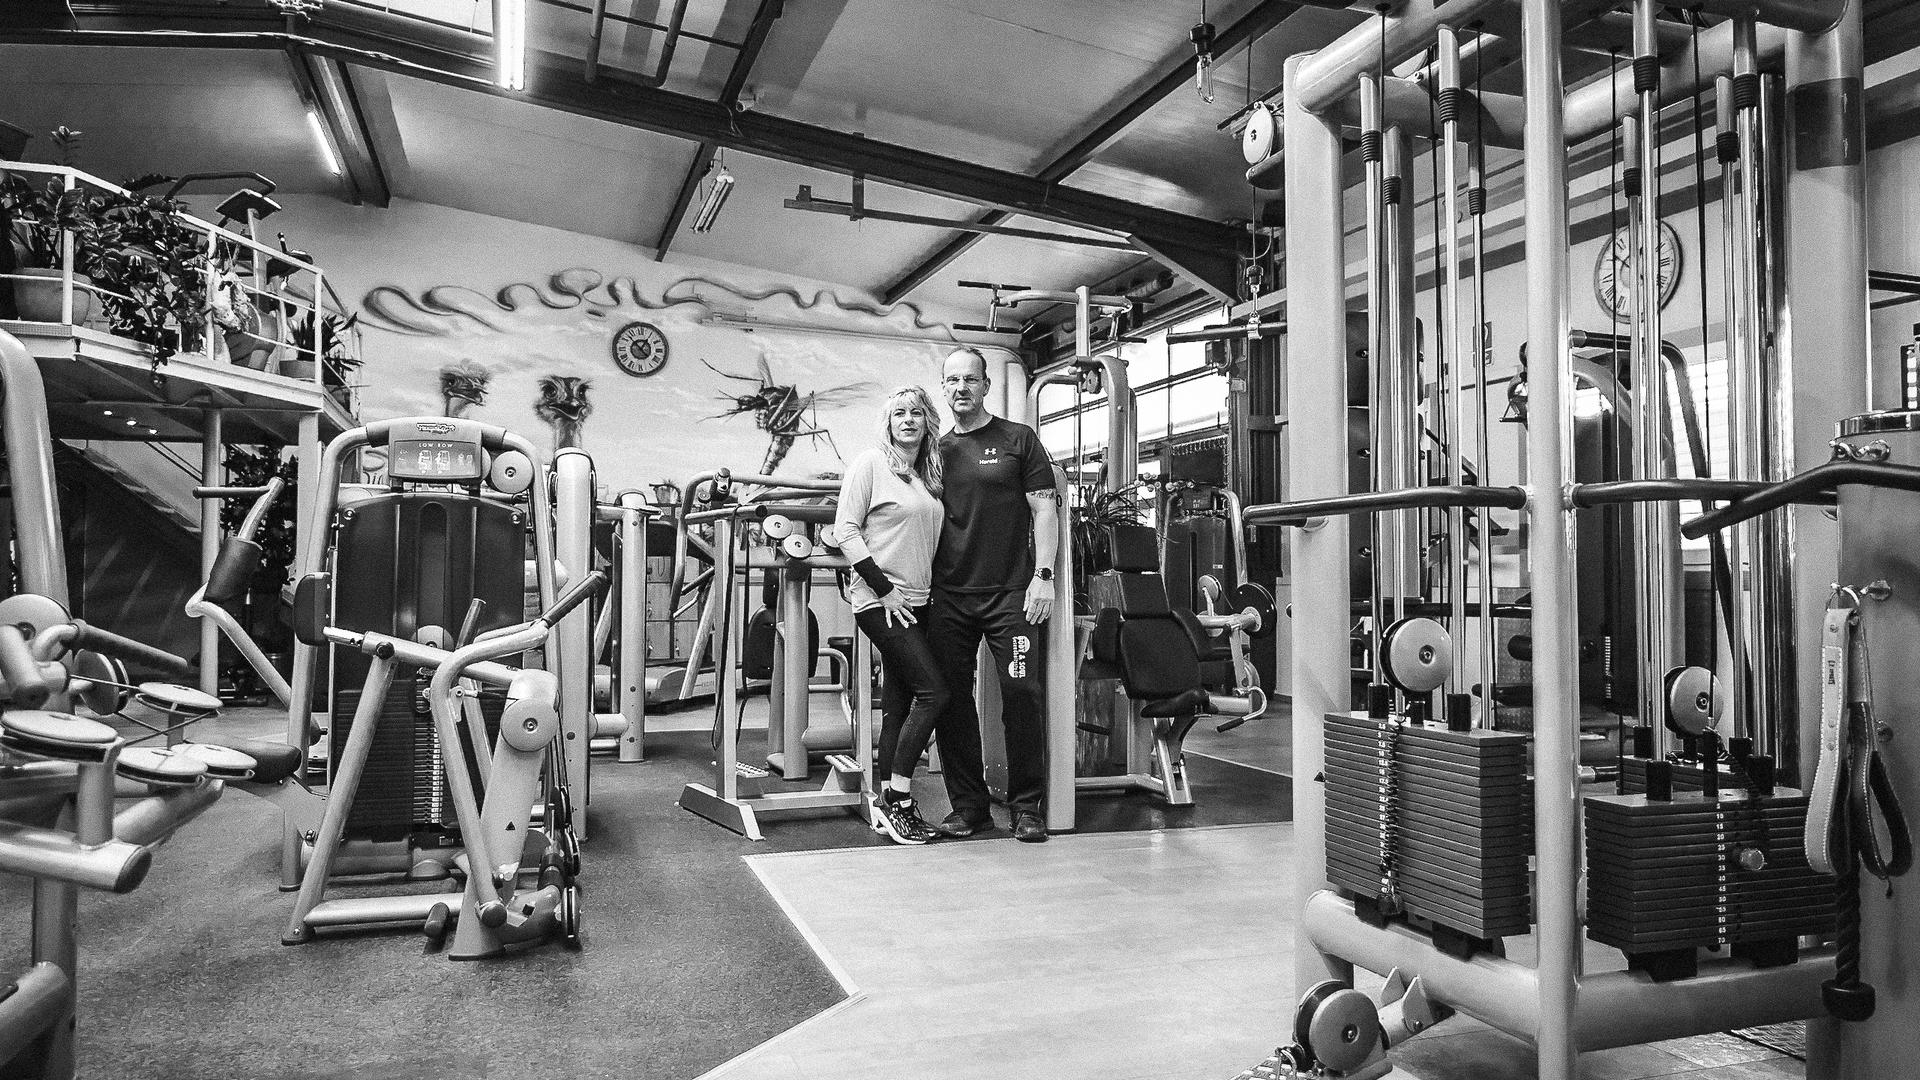 Keiner trainiert: Die Inhaber des Fitnessstudios Body & Soul, Harald und Iris, stehen in ihren leeren Räumen. 